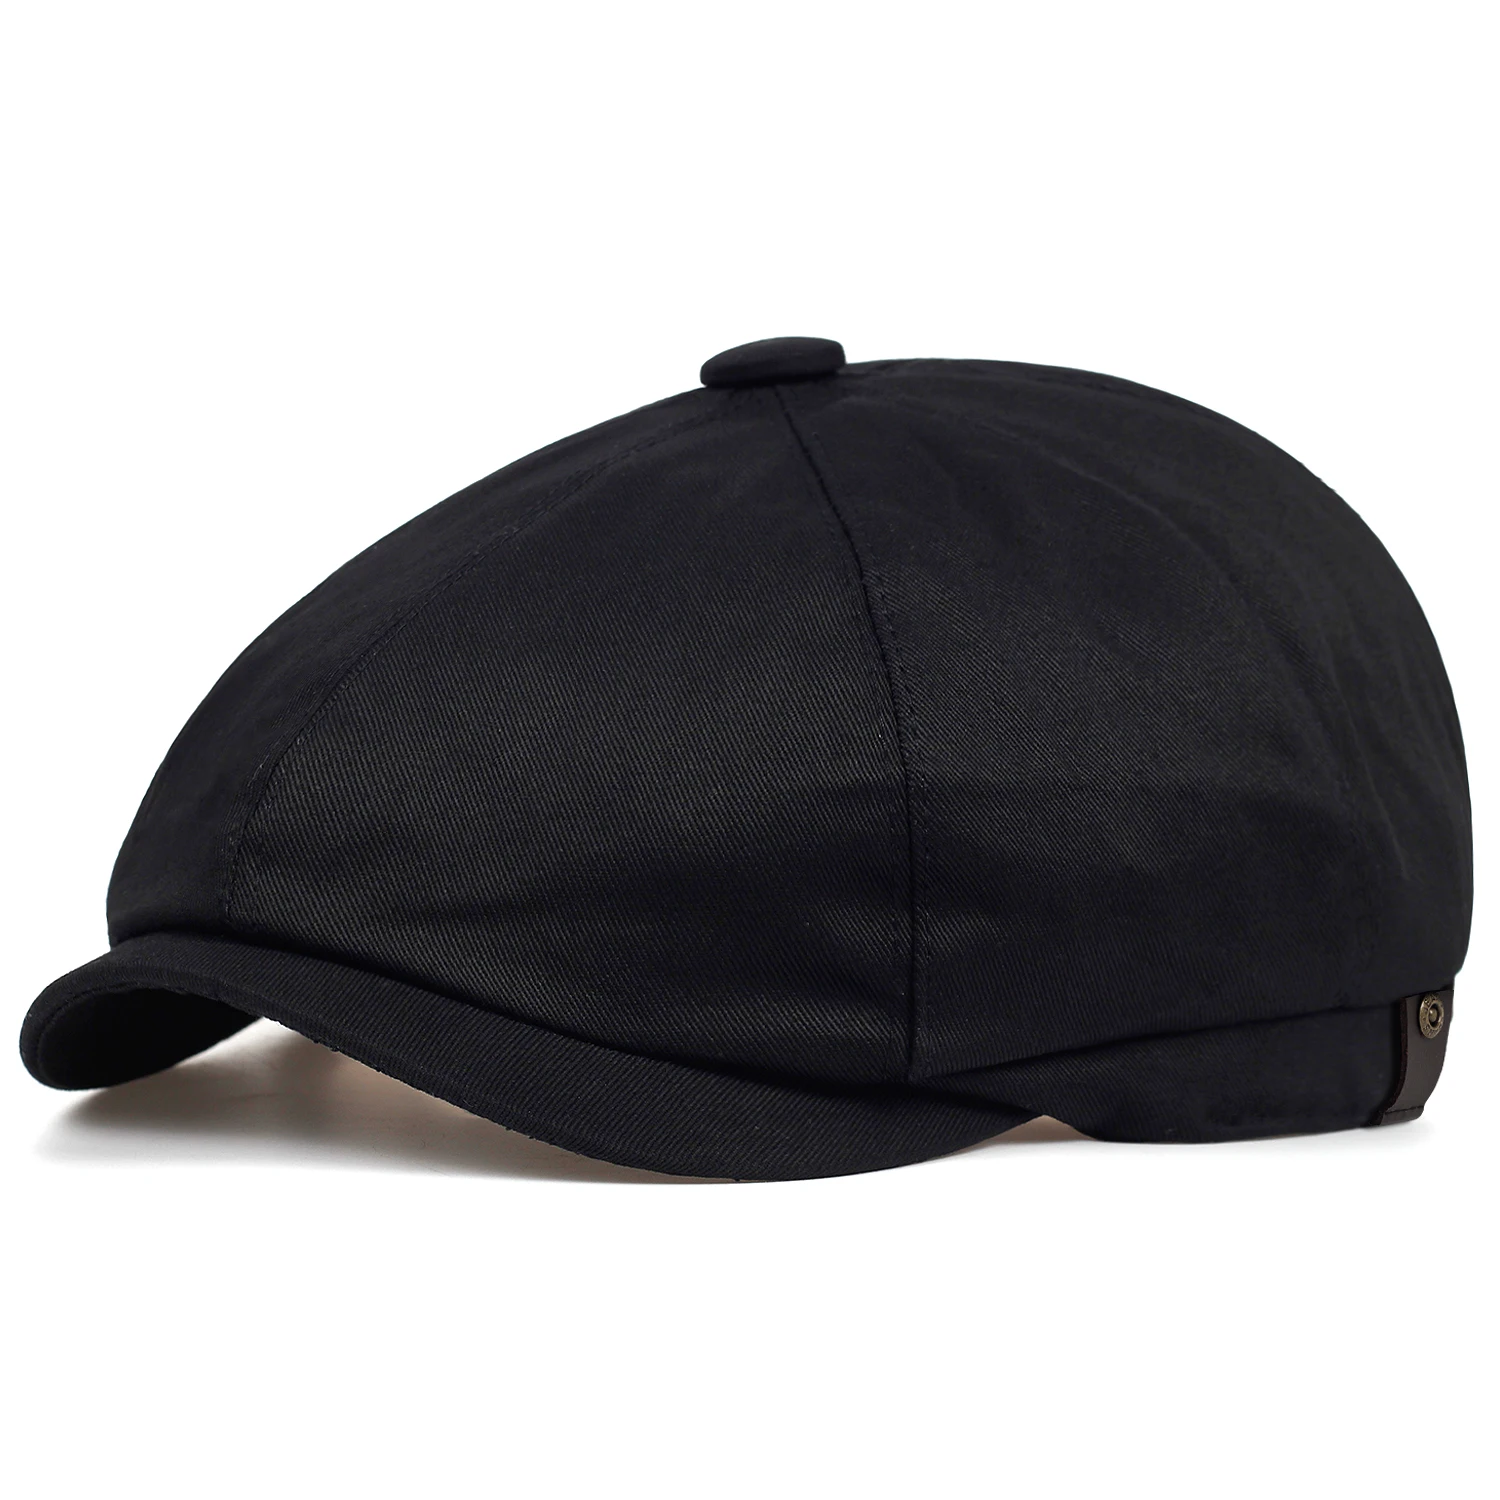 Высокое качество newboy Шляпа Сплошной Цвет береты шапки на осень и зиму, наружная теплая шляпа пара Универсальная крышка для спорта и отдыха, кепки